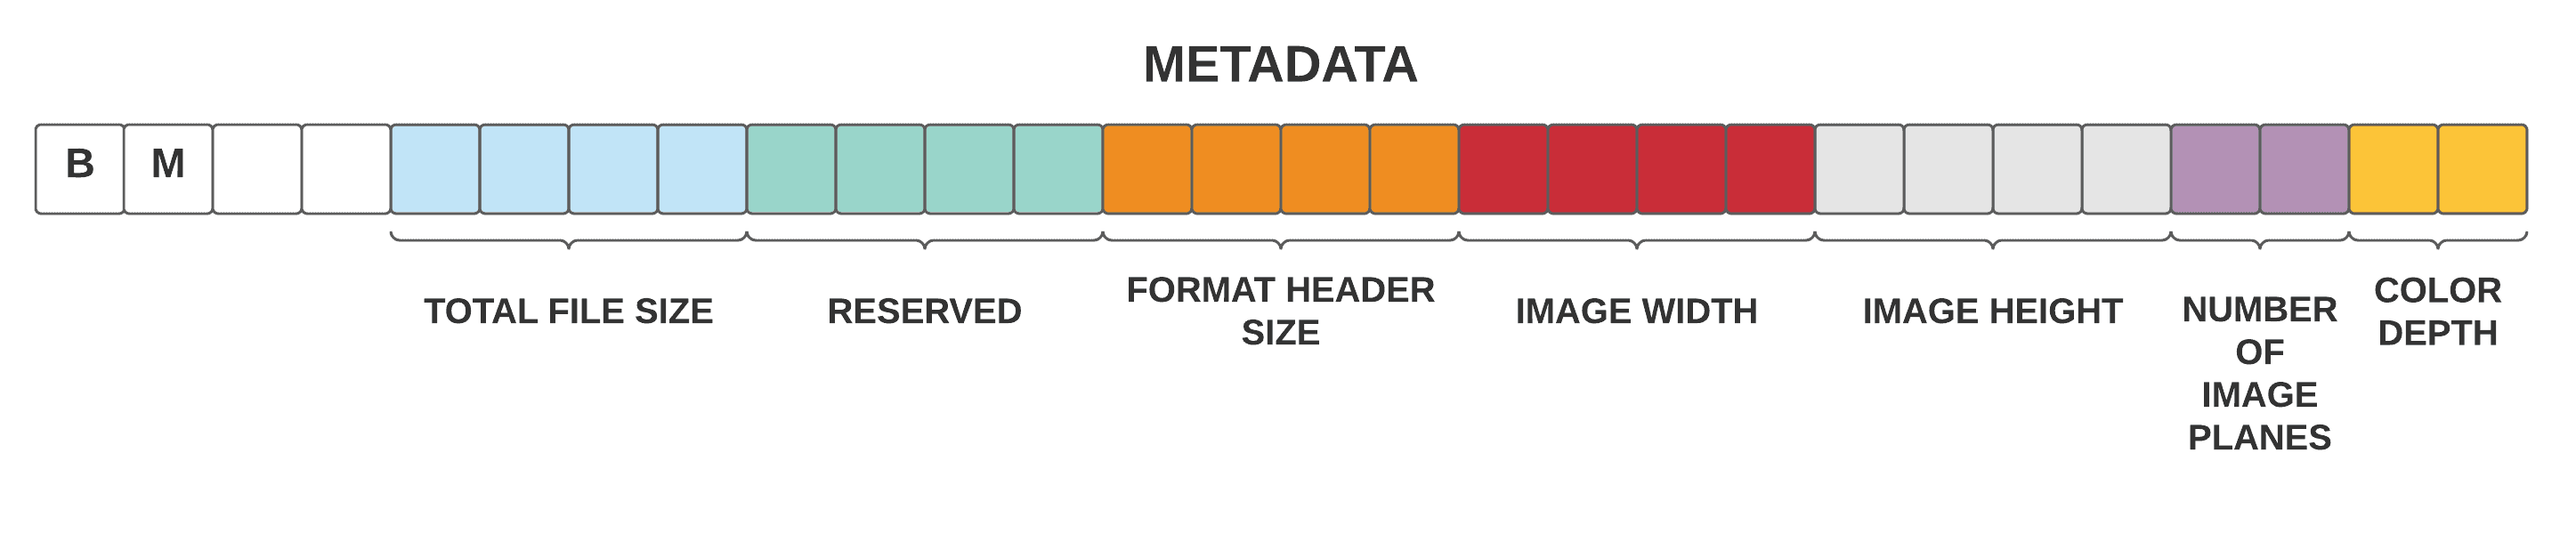 metadata bm 1